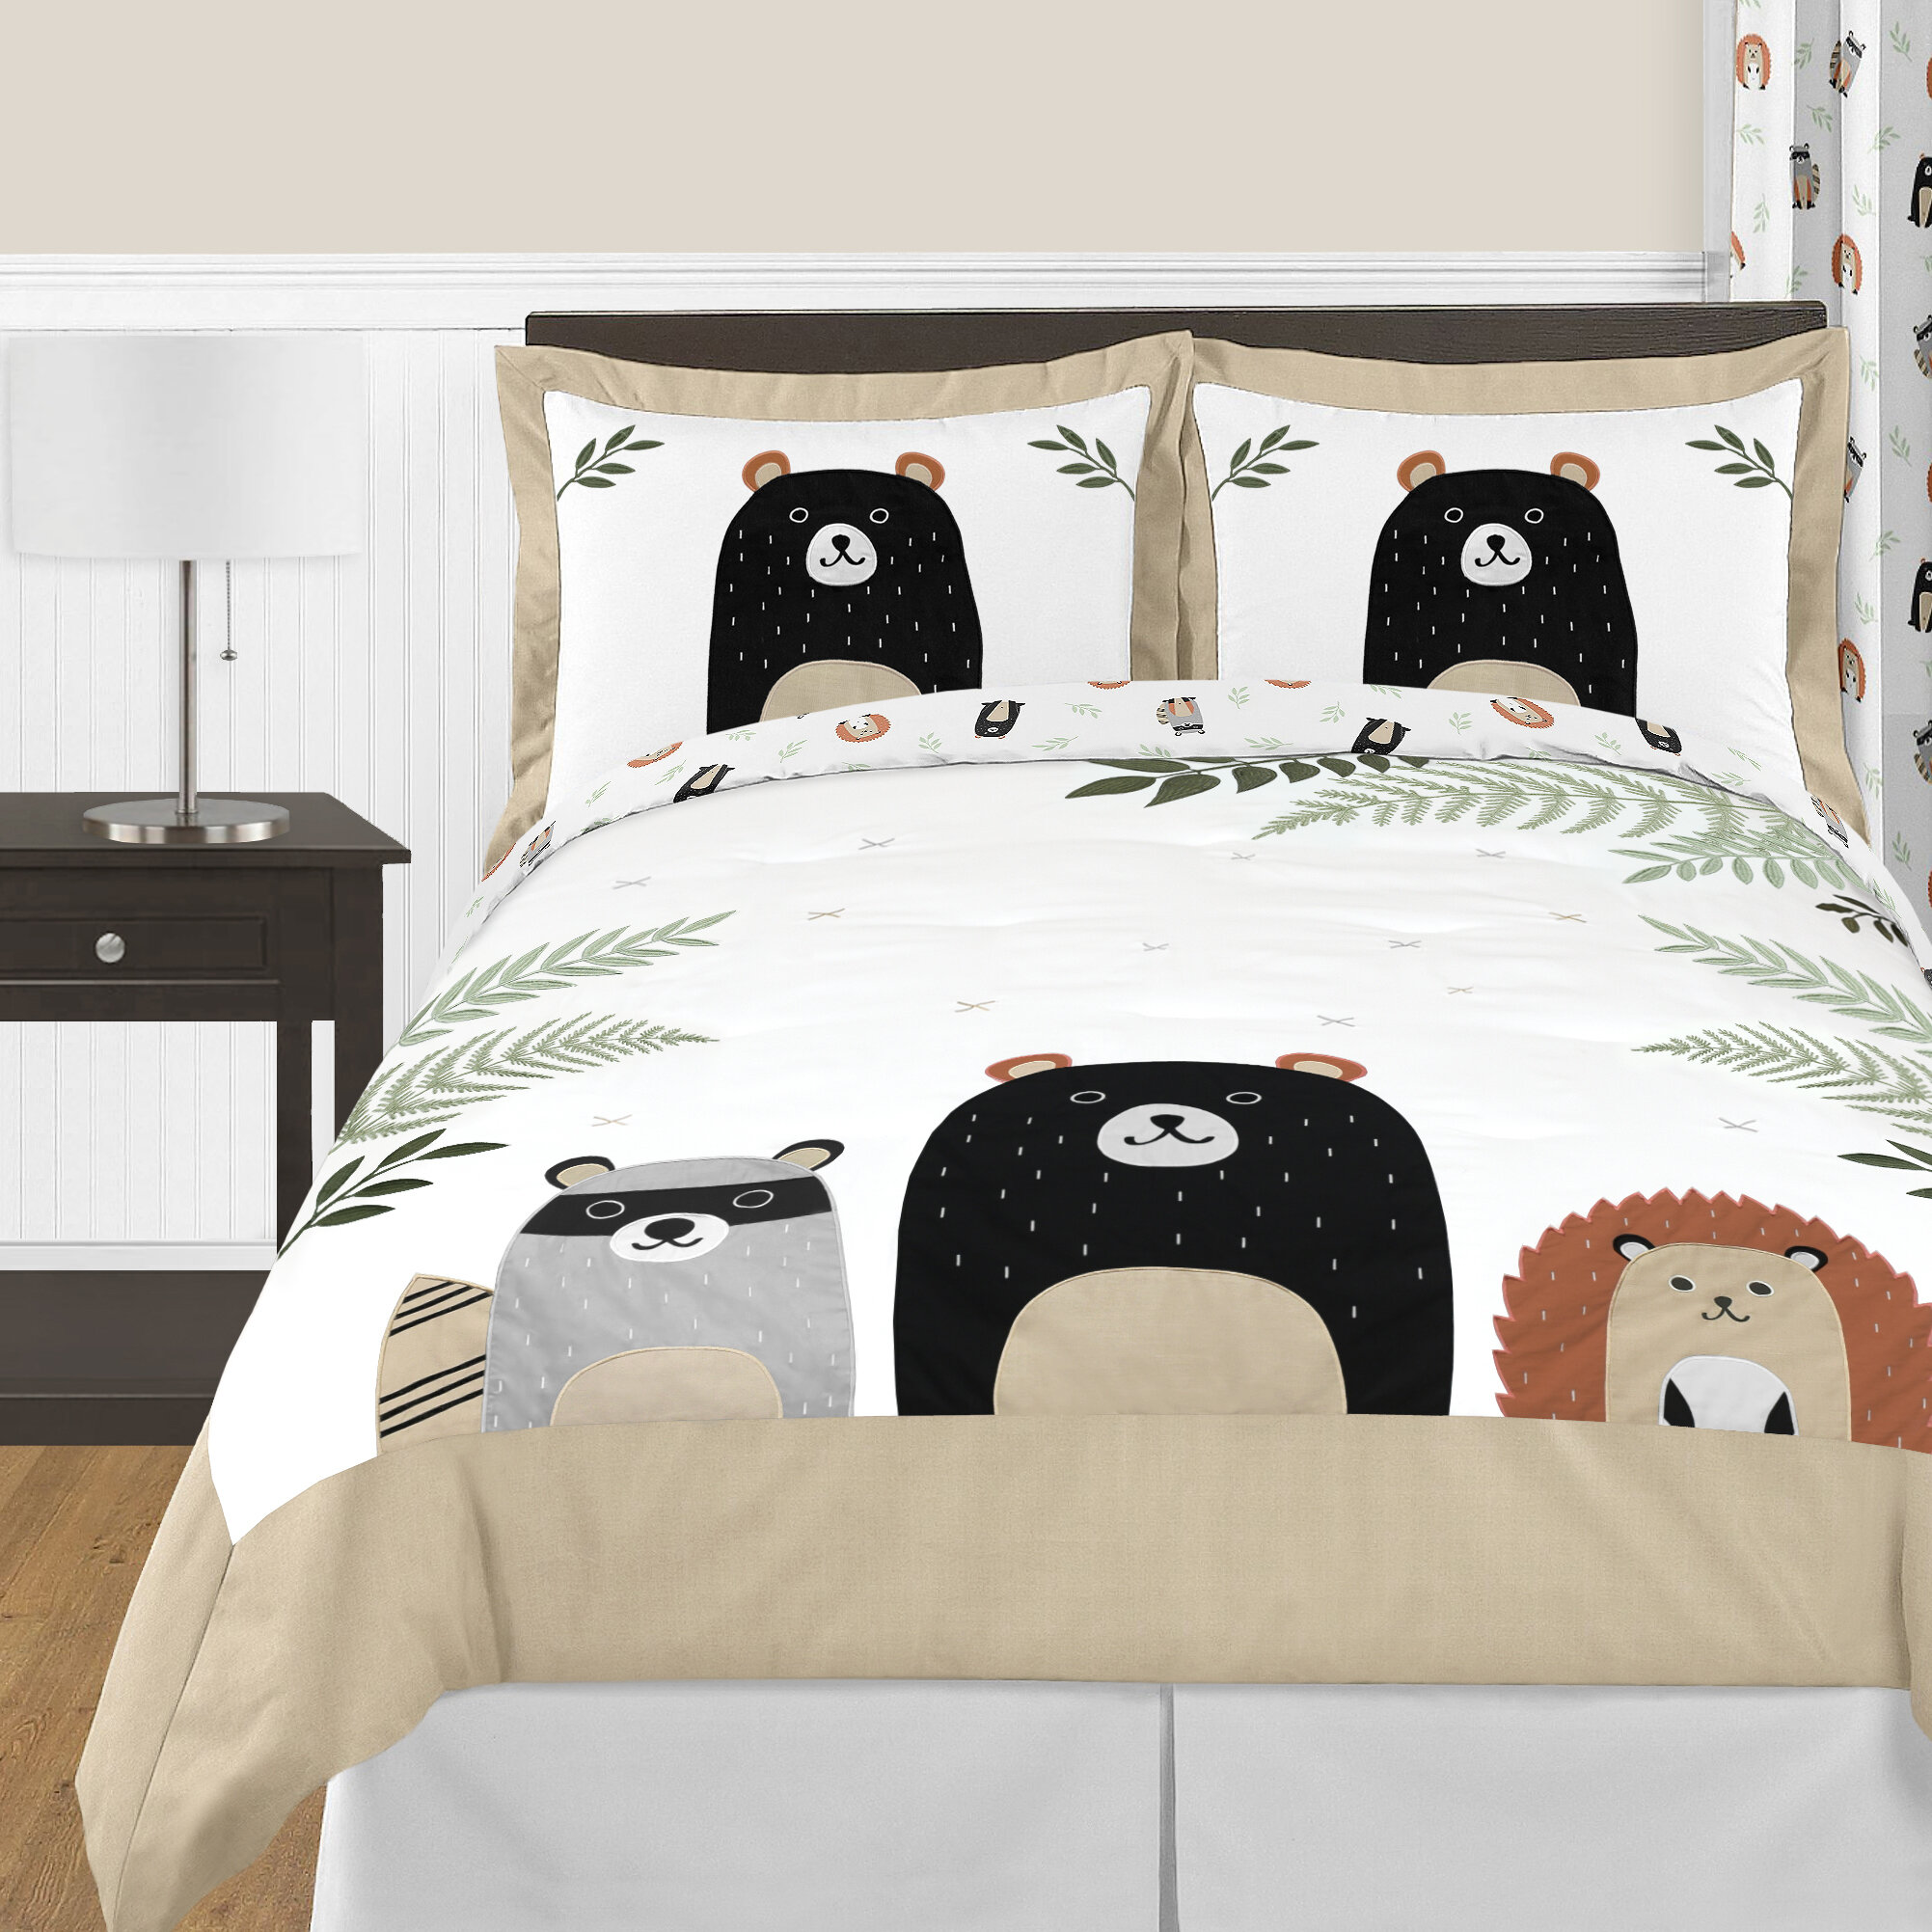 Sweet Jojo Designs Woodland Toile 3-Piece Full/Queen Comforter Set